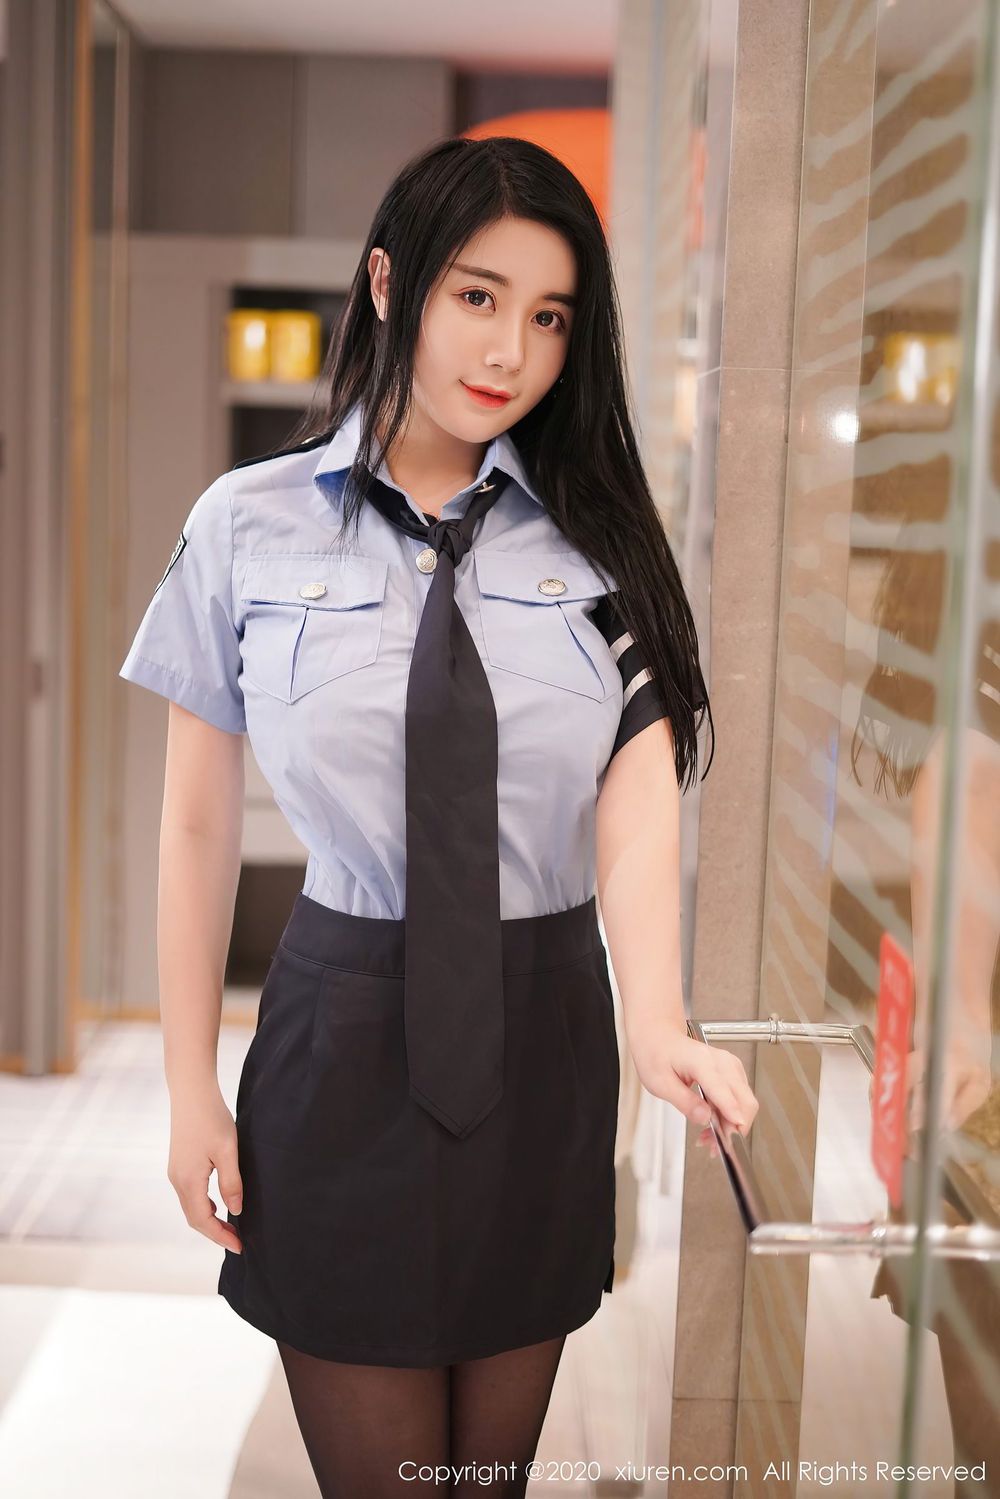 美女模特美七Mia - 黑丝美腿情趣女警制服系列写真